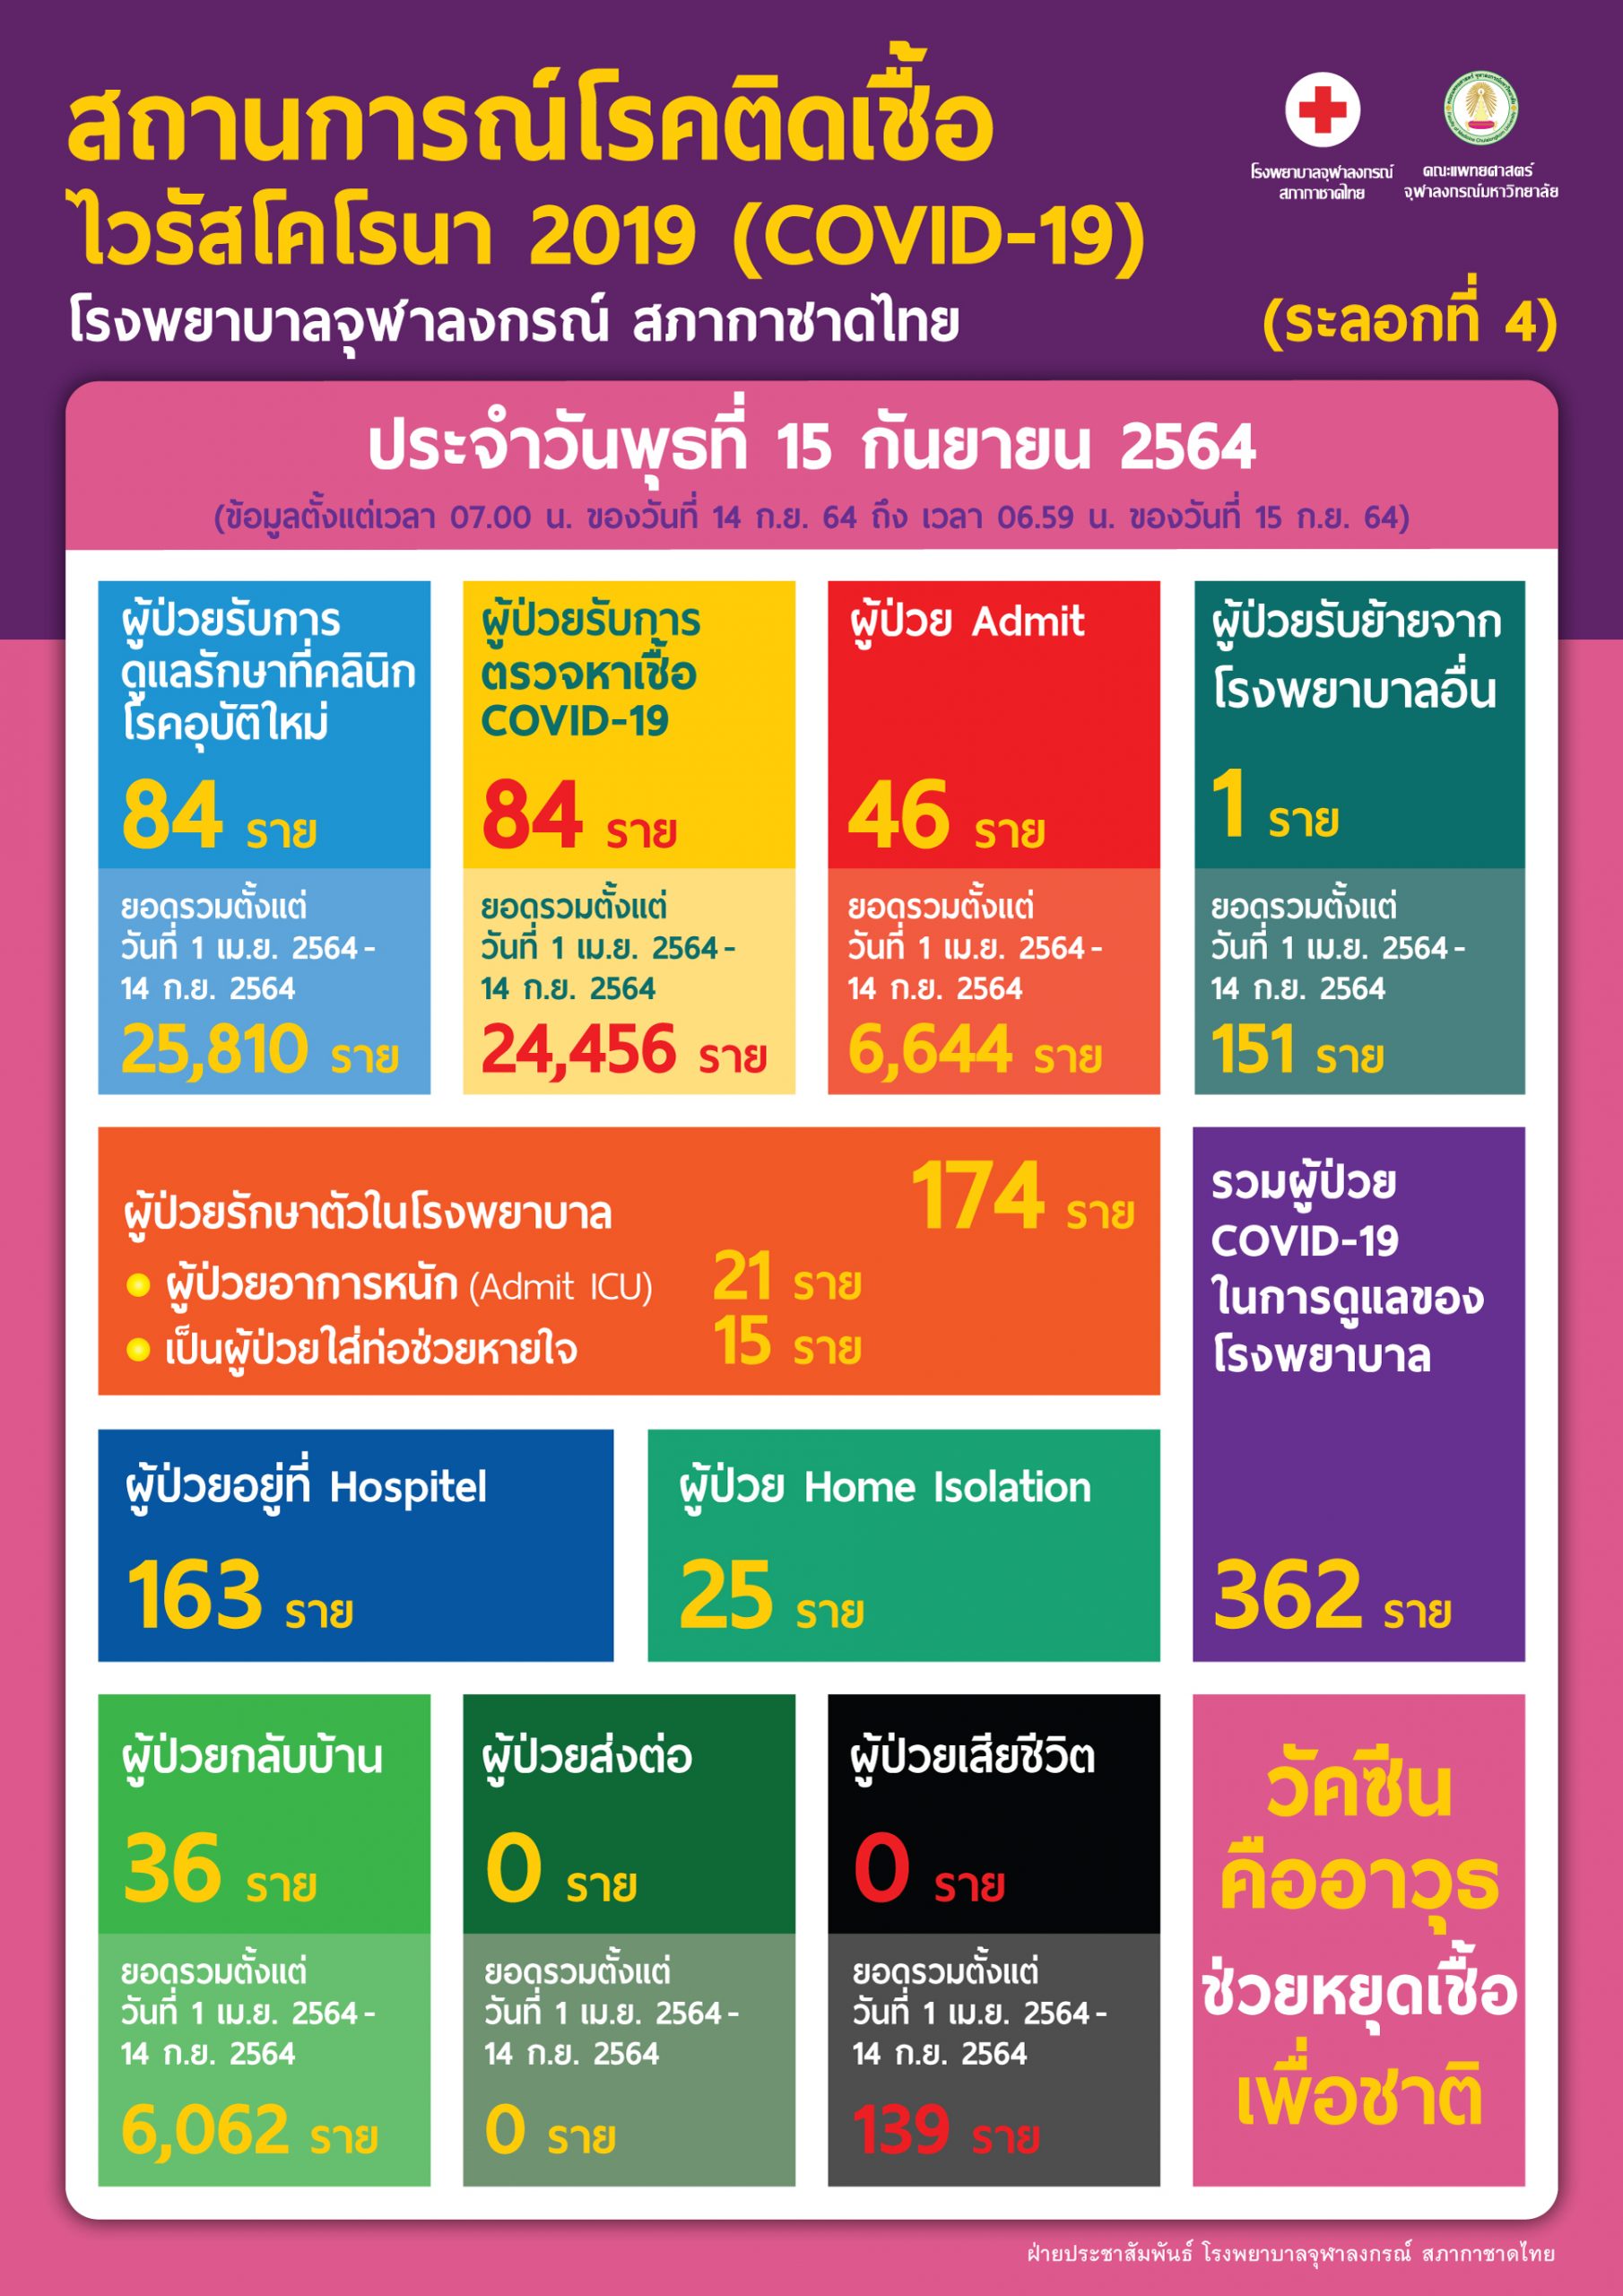 สถานการณ์โรคติดเชื้อไวรัสโคโรนา 2019 (COVID-19) (ระลอกที่ 4) โรงพยาบาลจุฬาลงกรณ์ สภากาชาดไทย ประจำวันพุธที่ 15 กันยายน 2564